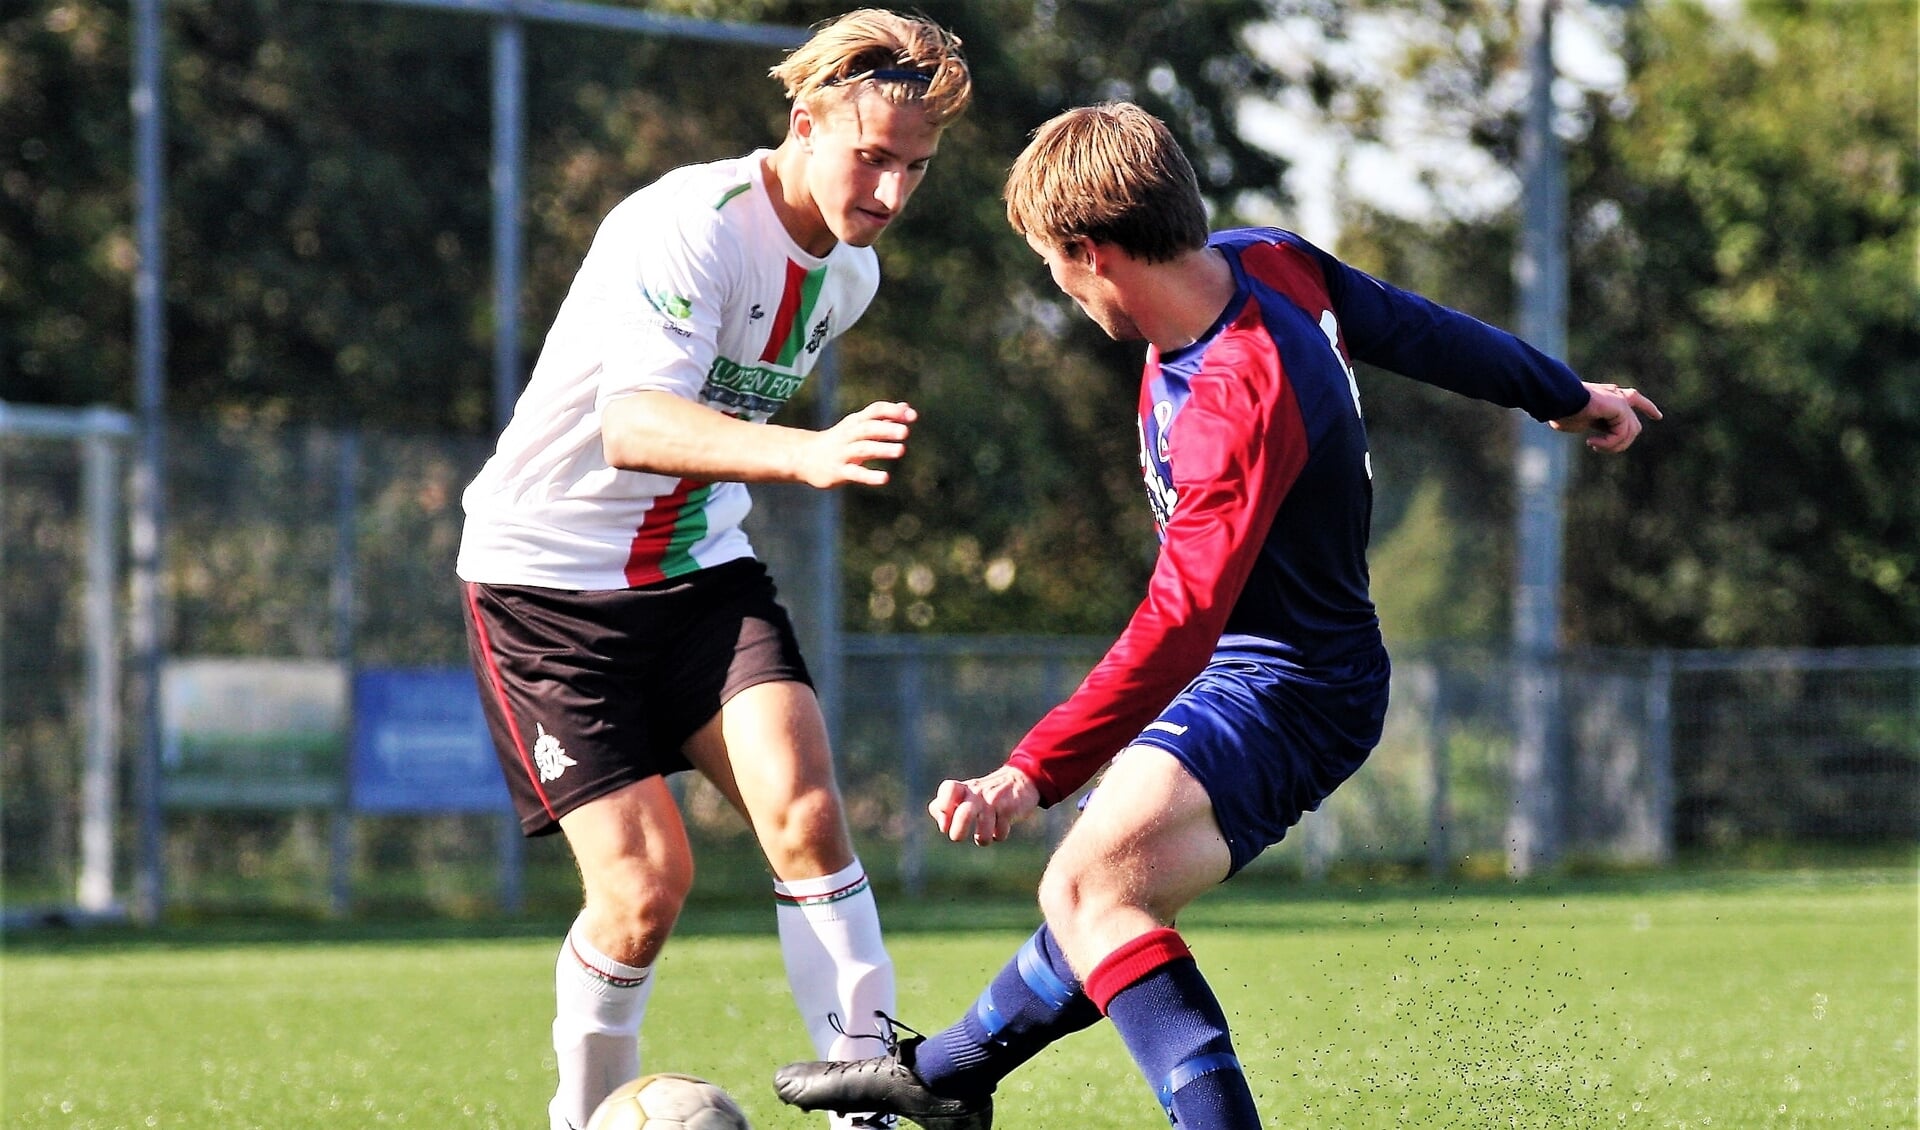 Stompwijk’92-spits Kite Beuvink scoorde zondag zijn 3e hattrick in 5 wedstrijden (archieffoto: AW).